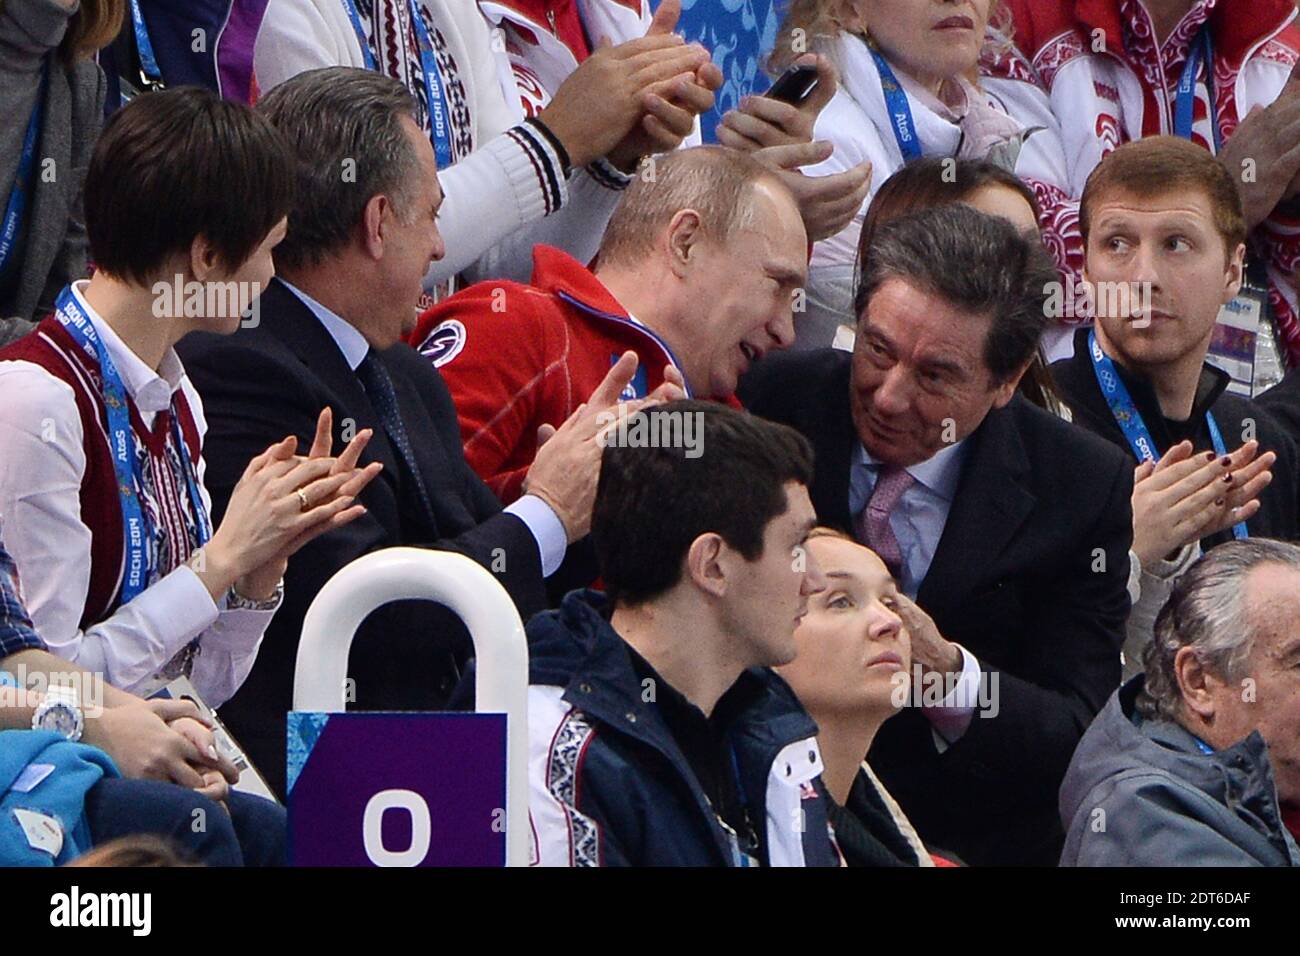 Russlands Präsident Wladimir Putin und der Präsident der Internationalen Skating Union Ottavio Cinquanta (L-R) beobachten am 9. Februar 2014 den Eiskunstlauf-Wettbewerb im Eisberg Skating Palace in Sotschi, Russland. Foto von Gouhier-Zabulon/ABACAPRESS.COM Stockfoto